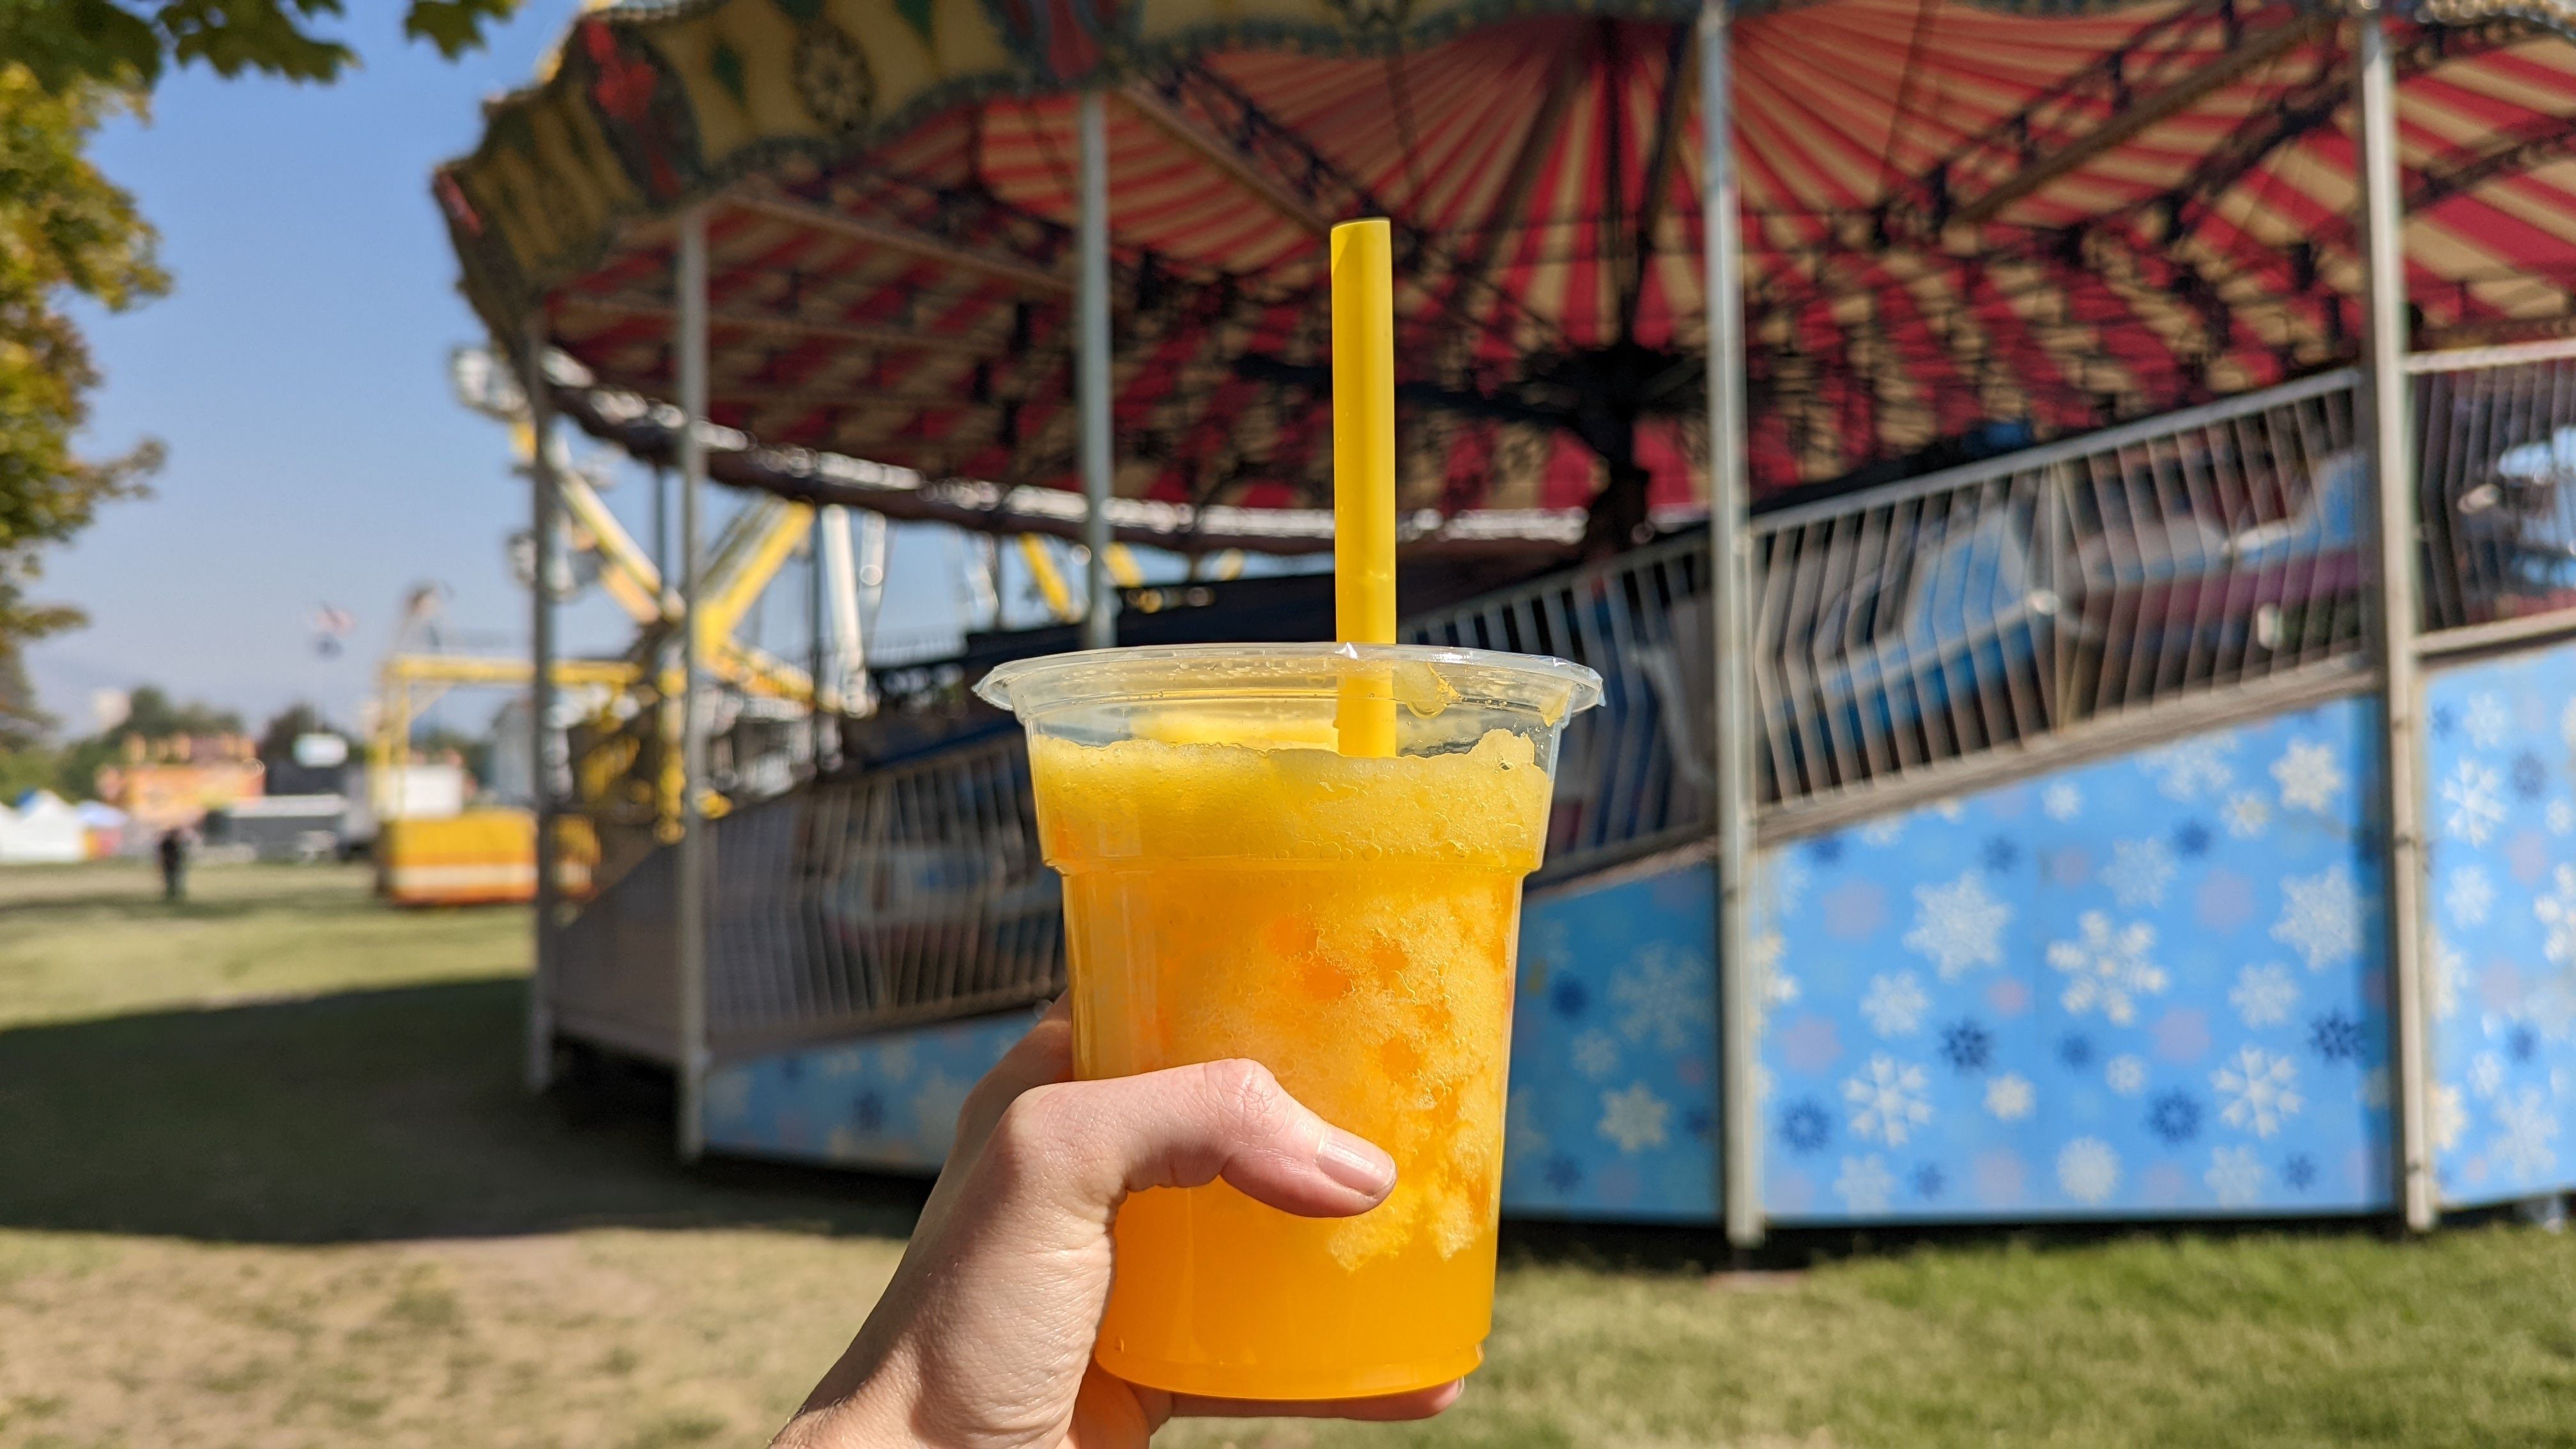 A mango boba drink at the Utah State Fair. Photo: Erin Alberty/Axios